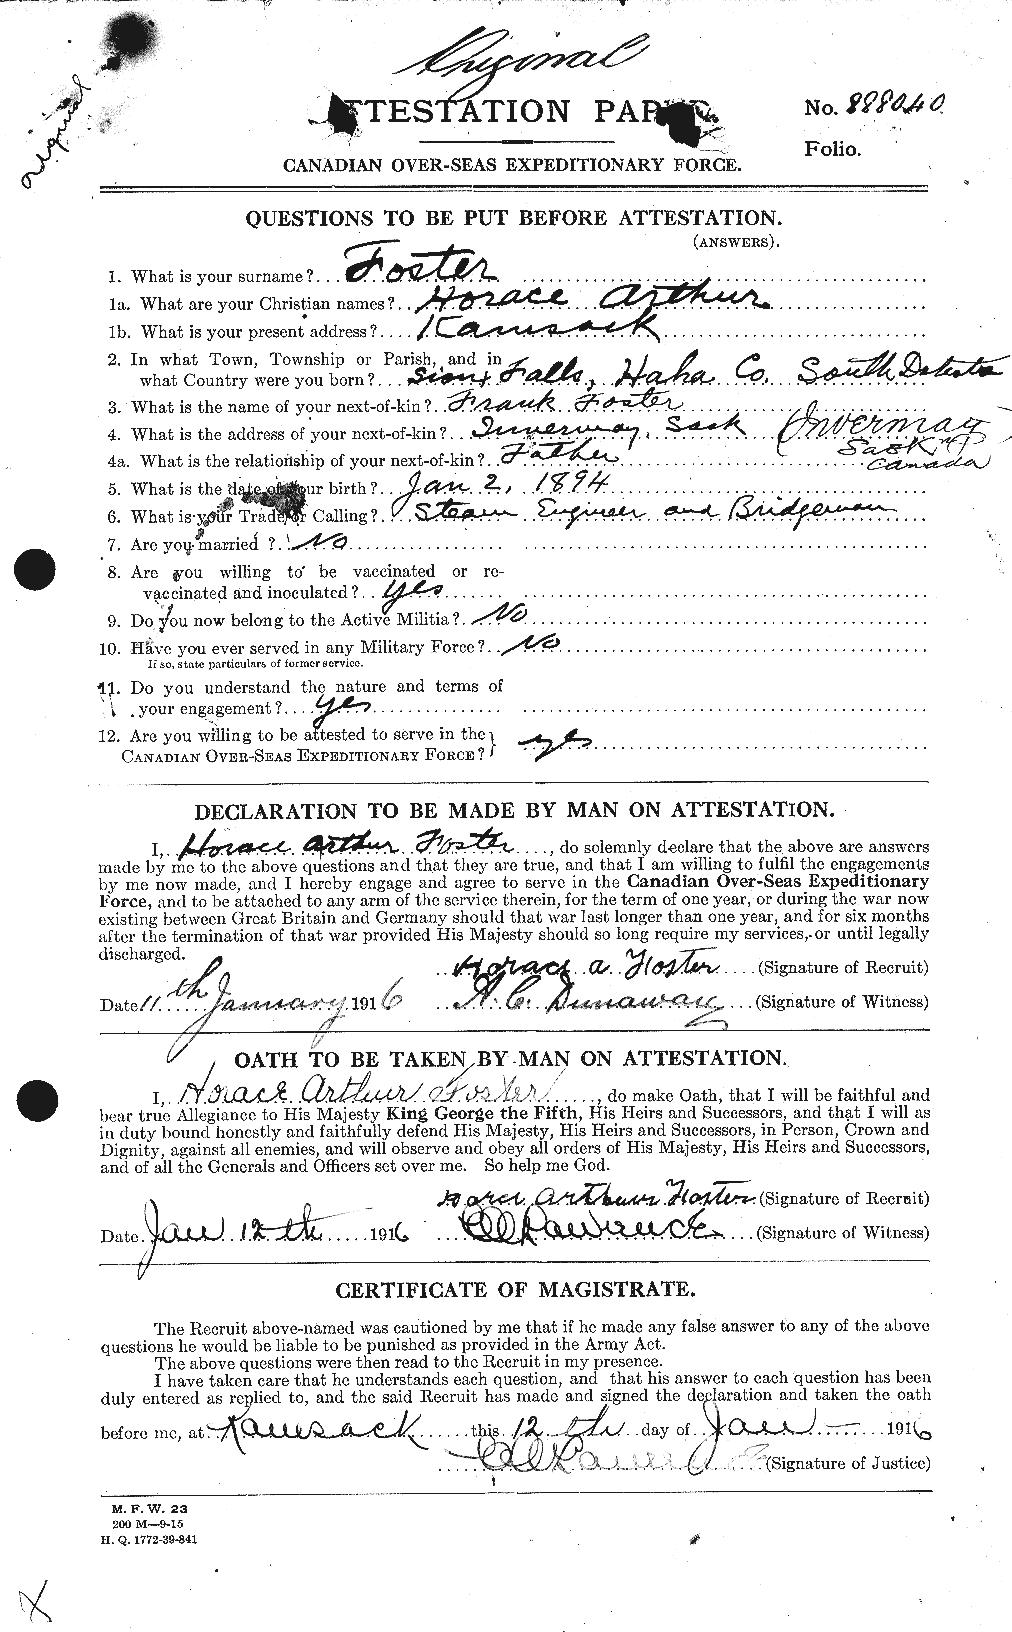 Dossiers du Personnel de la Première Guerre mondiale - CEC 333265a